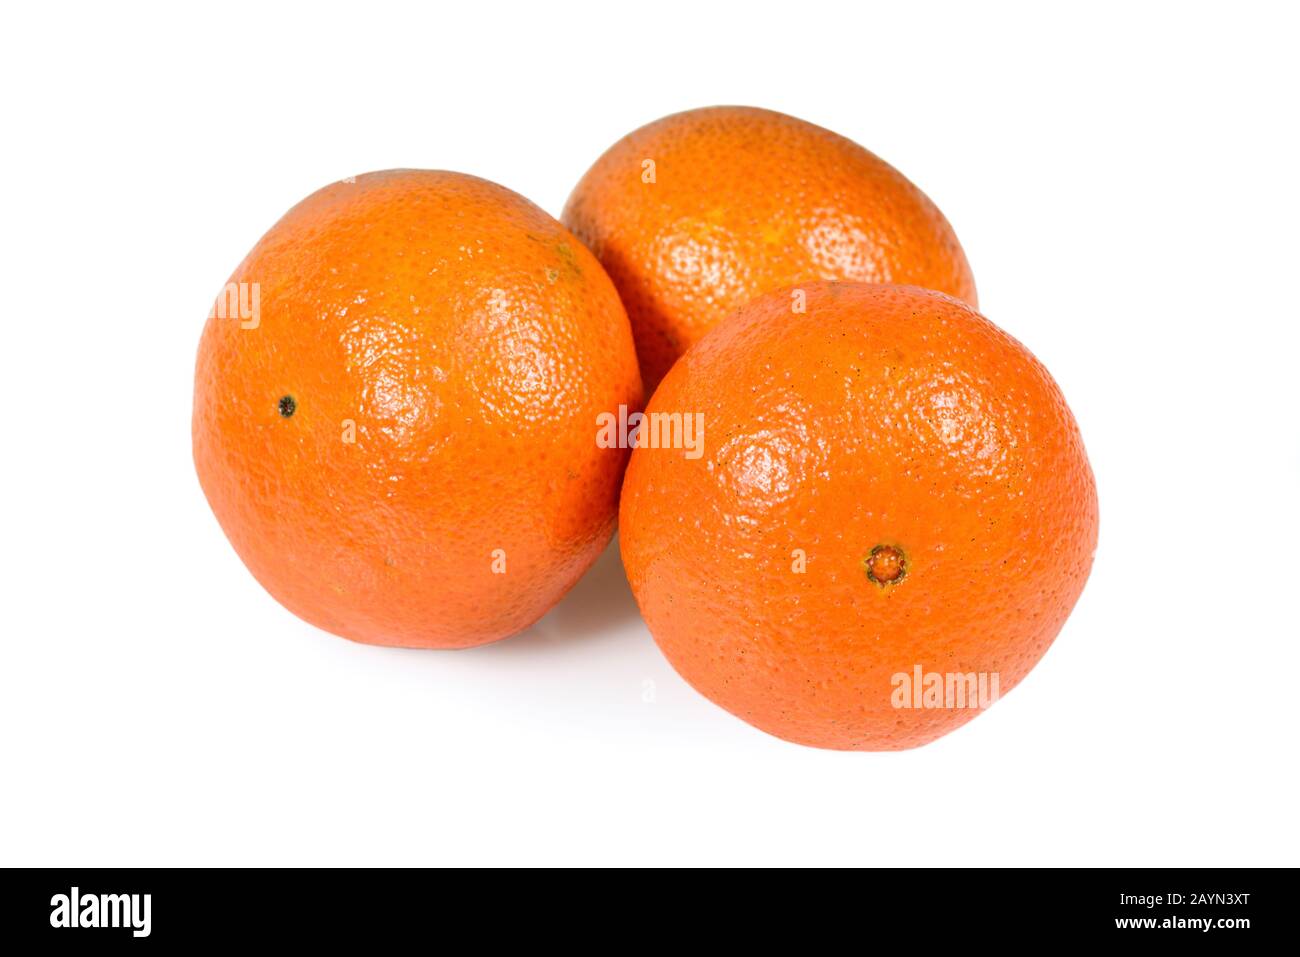 Mandarino o mandarino agrumi isolati su fondo bianco con sentiero di taglio Foto Stock